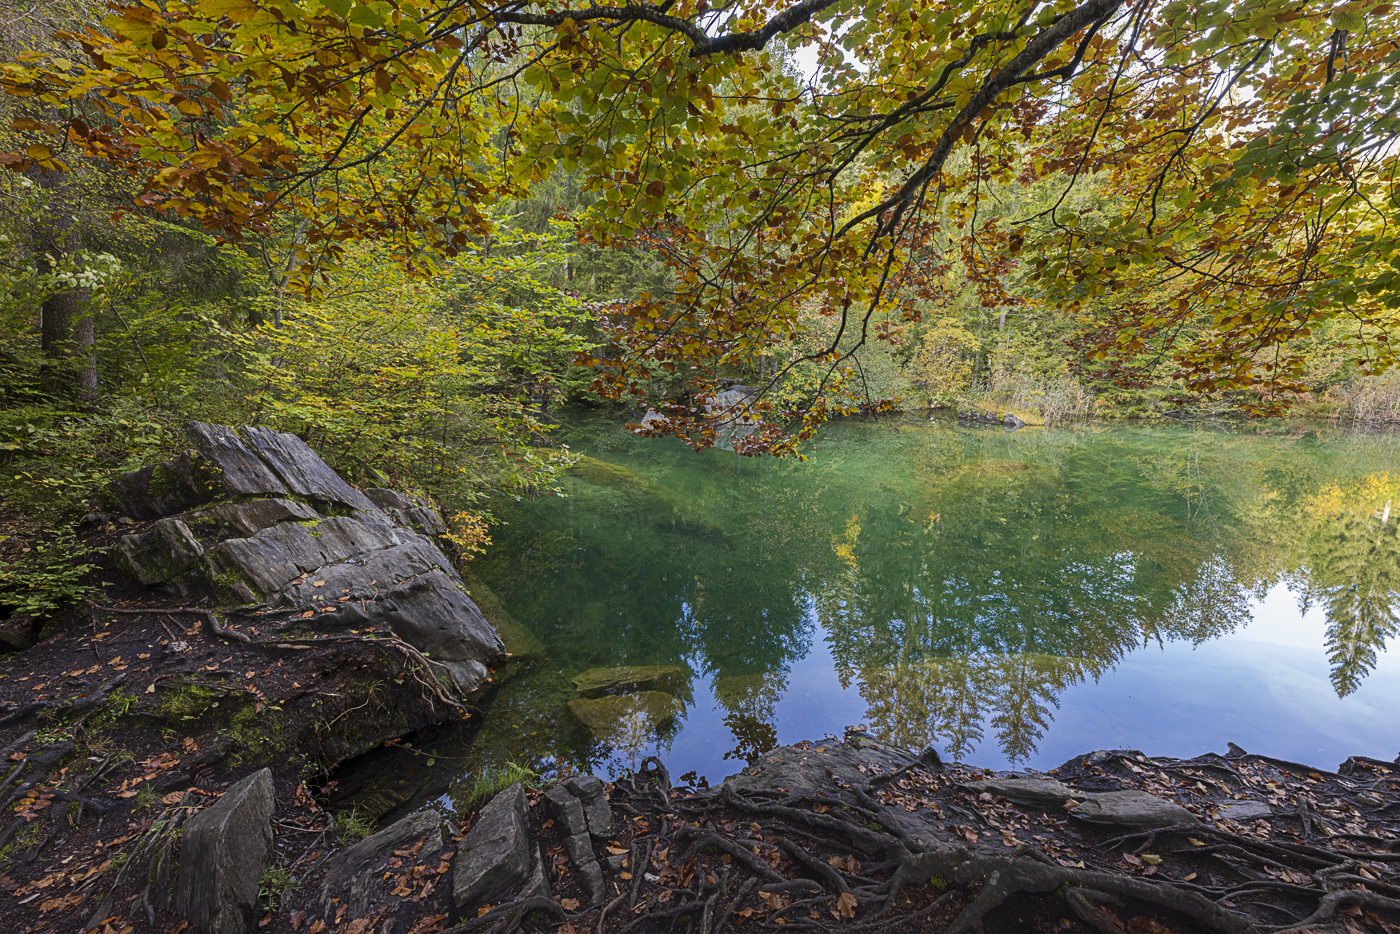 Herbstlicher Crestasee